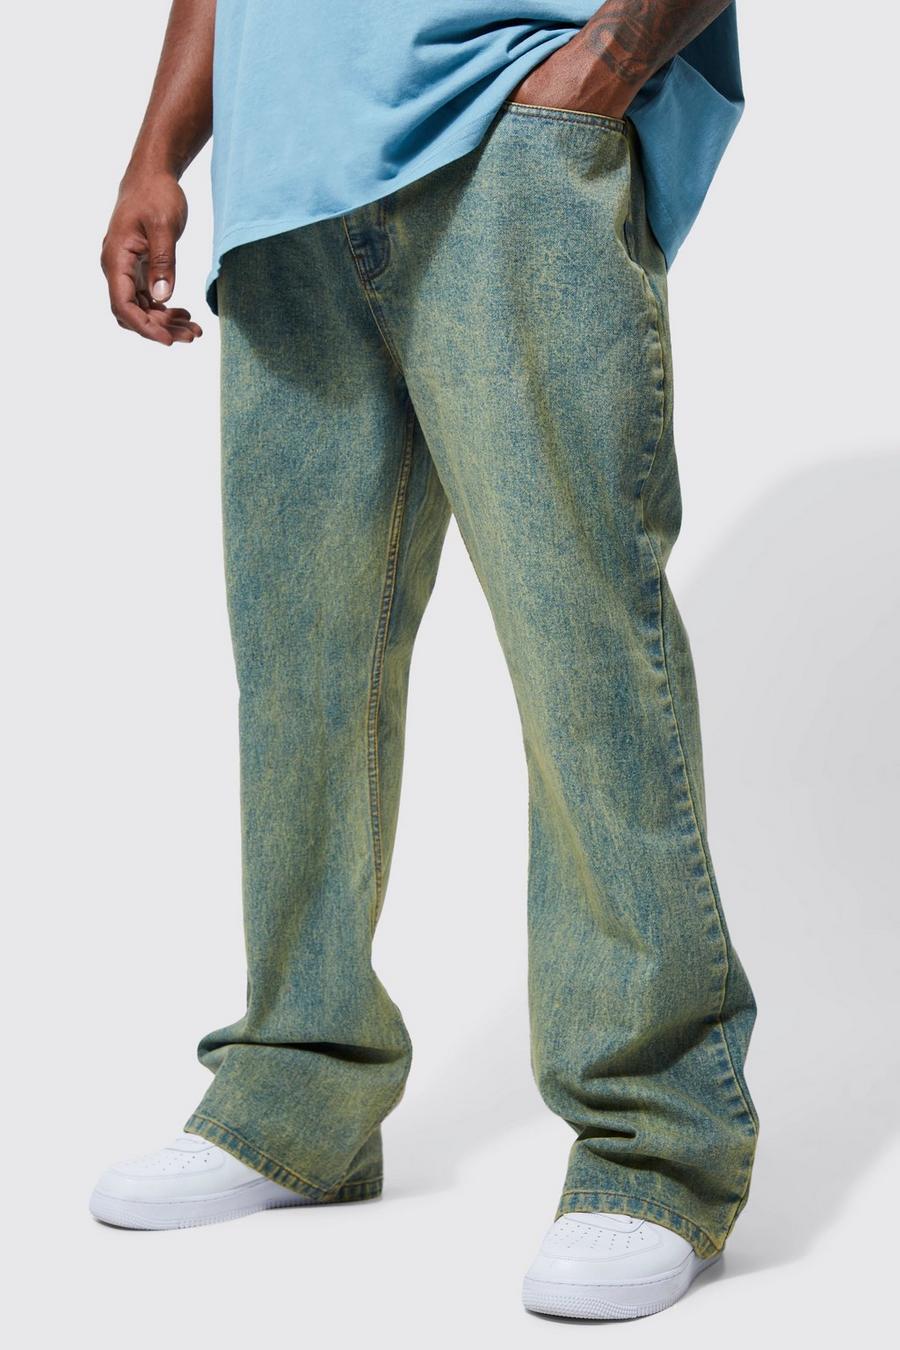 Jeans a zampa Plus Size Slim Fit in denim rigido colorato, Antique wash